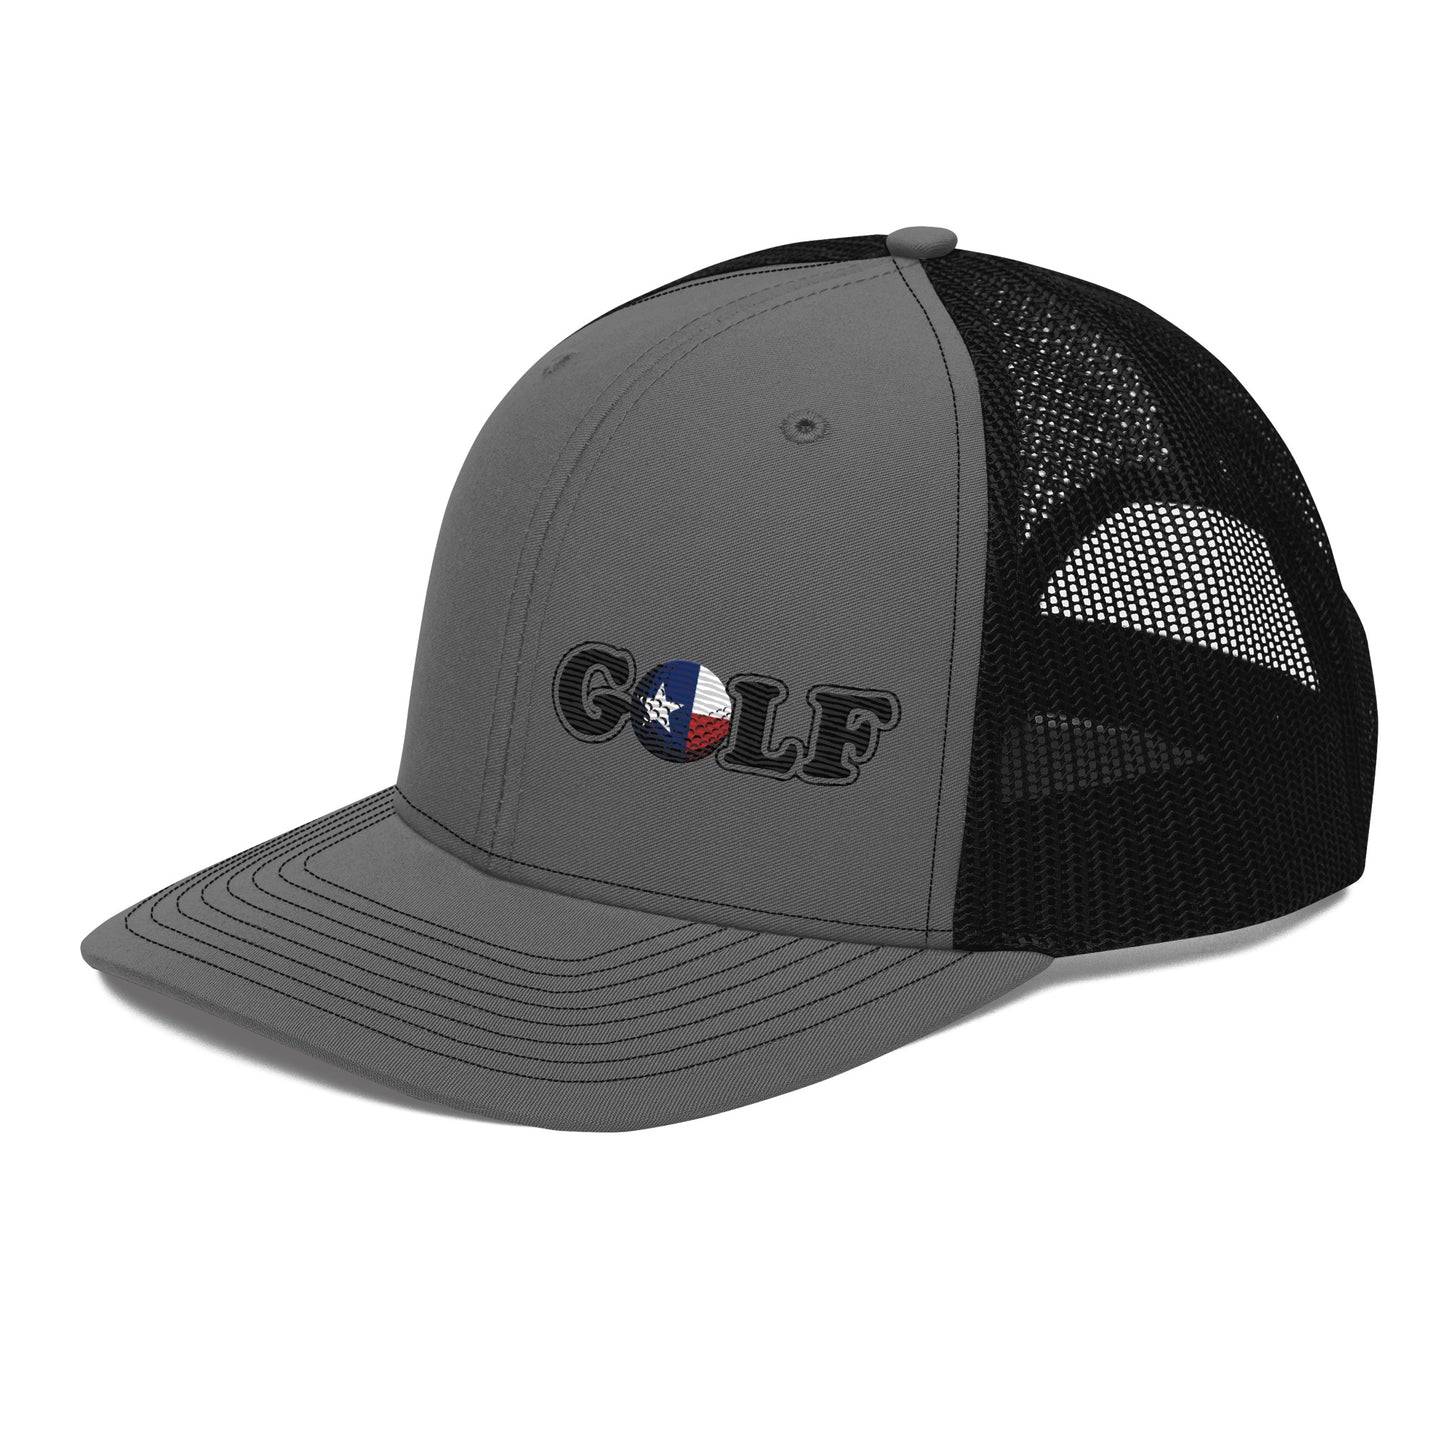 Trucker Cap - Golf